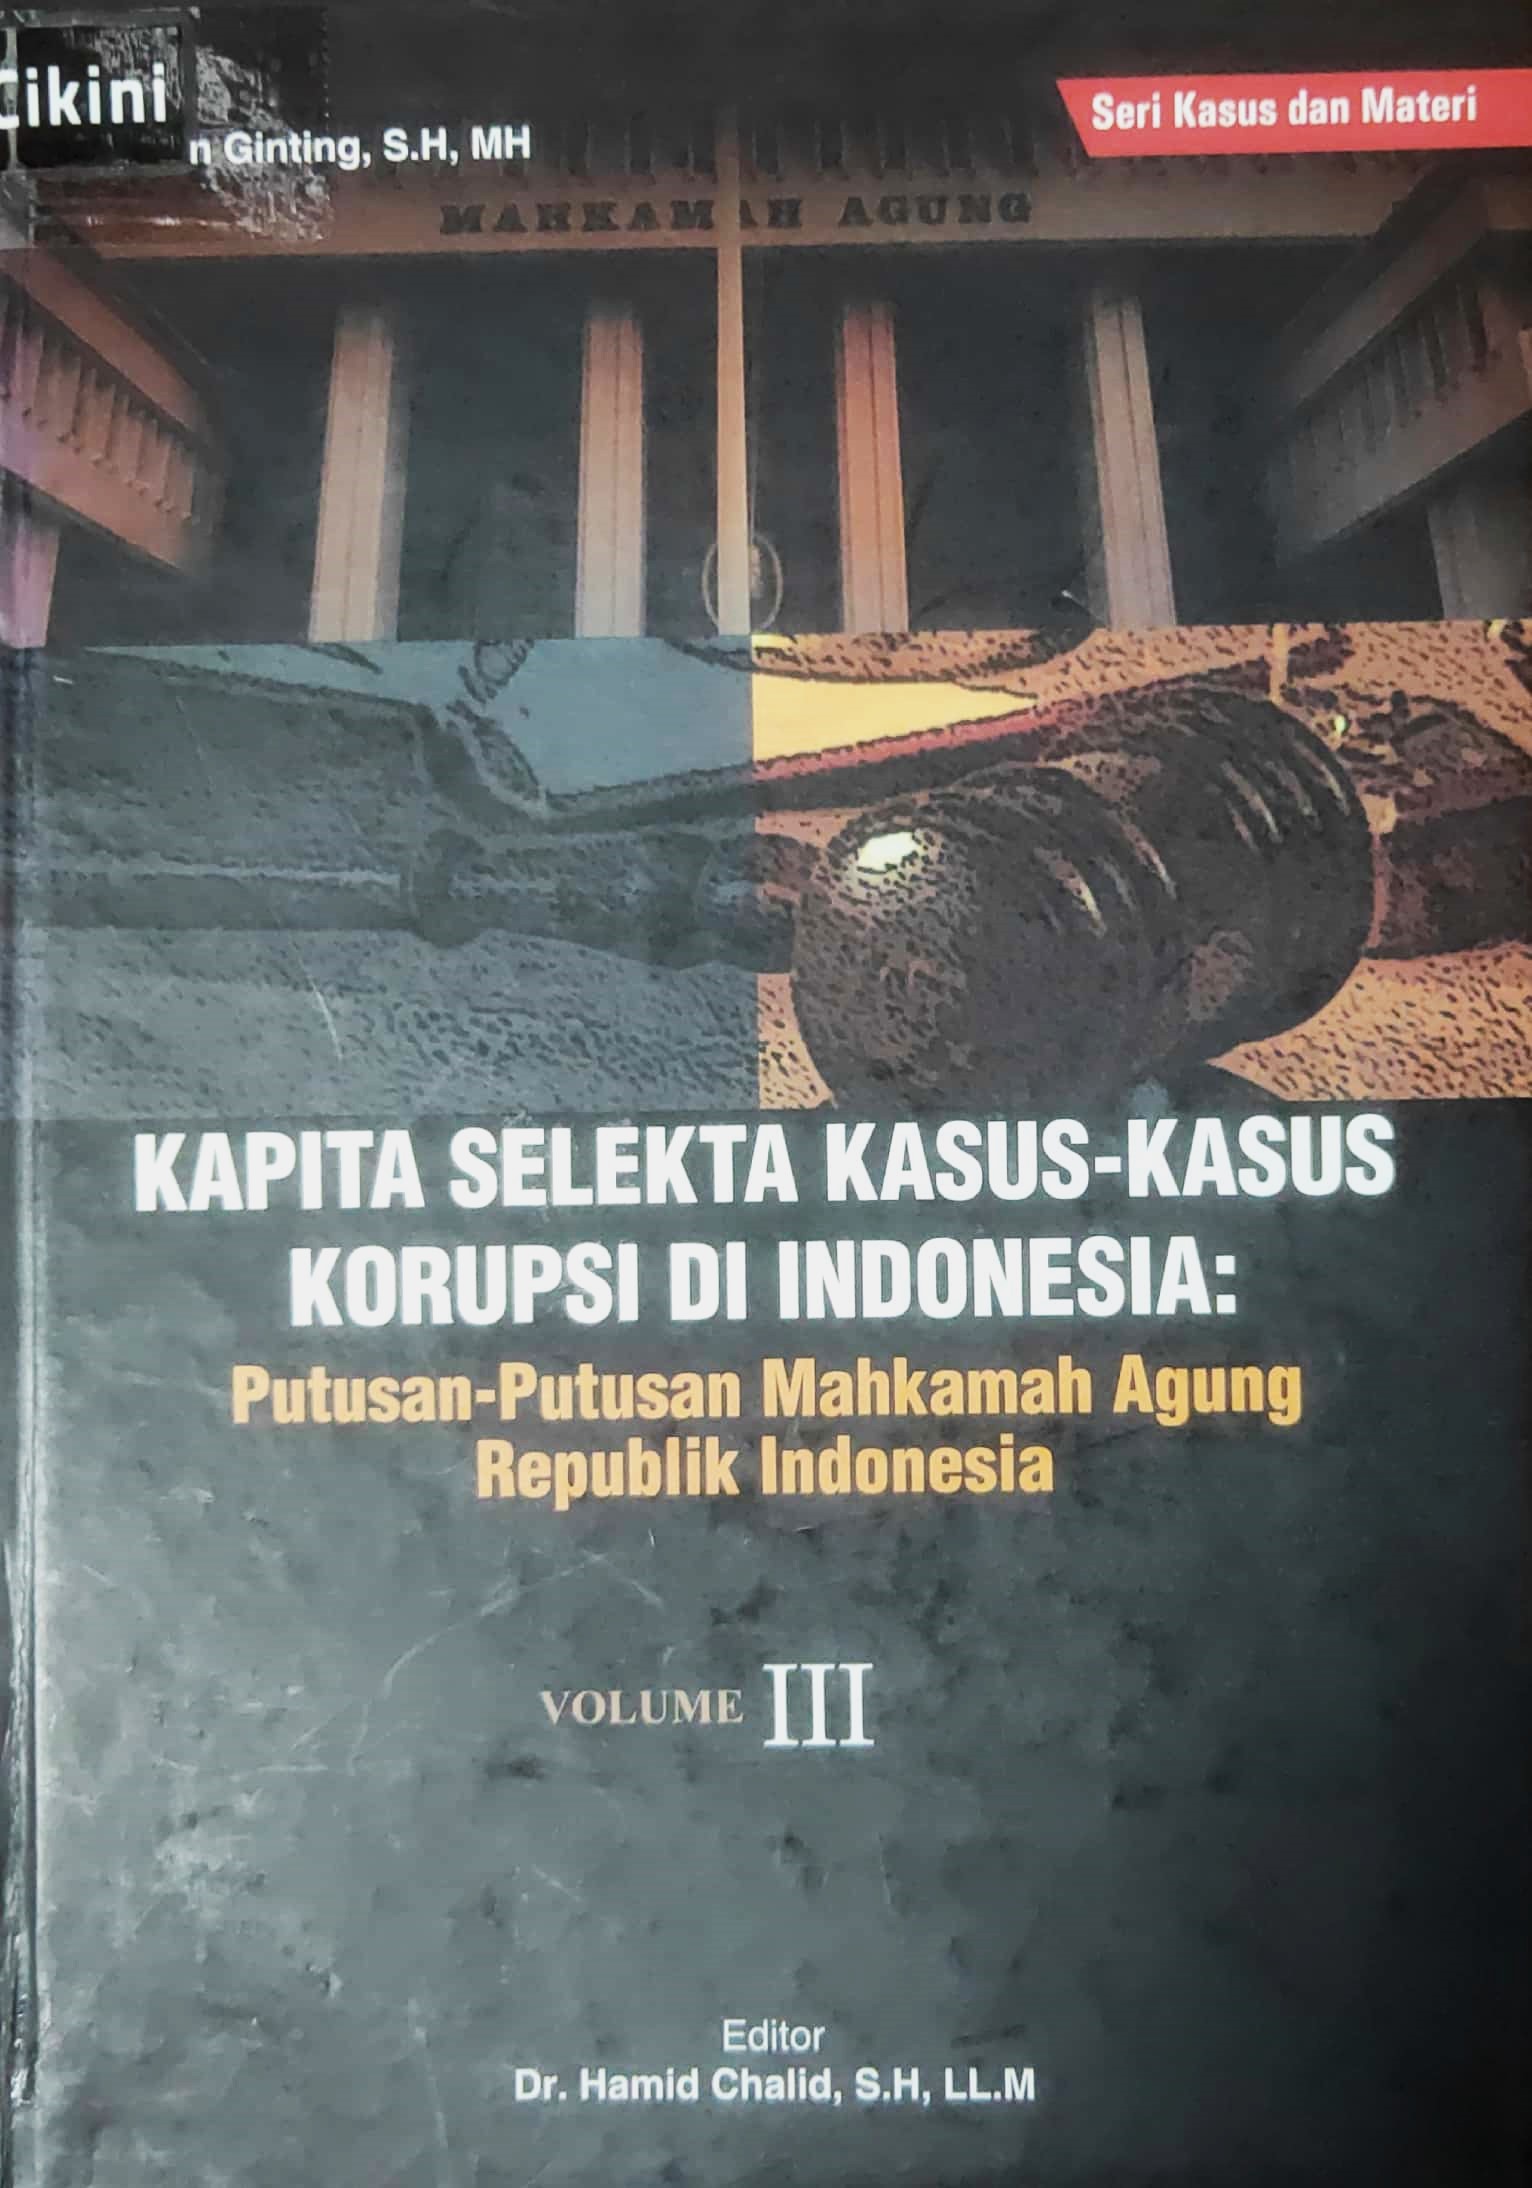 Kapita selekta kasus-kasus korupsi di Indonesia volume 3 :  putusan-putusan Mahkamah Agung Republik Indonesia